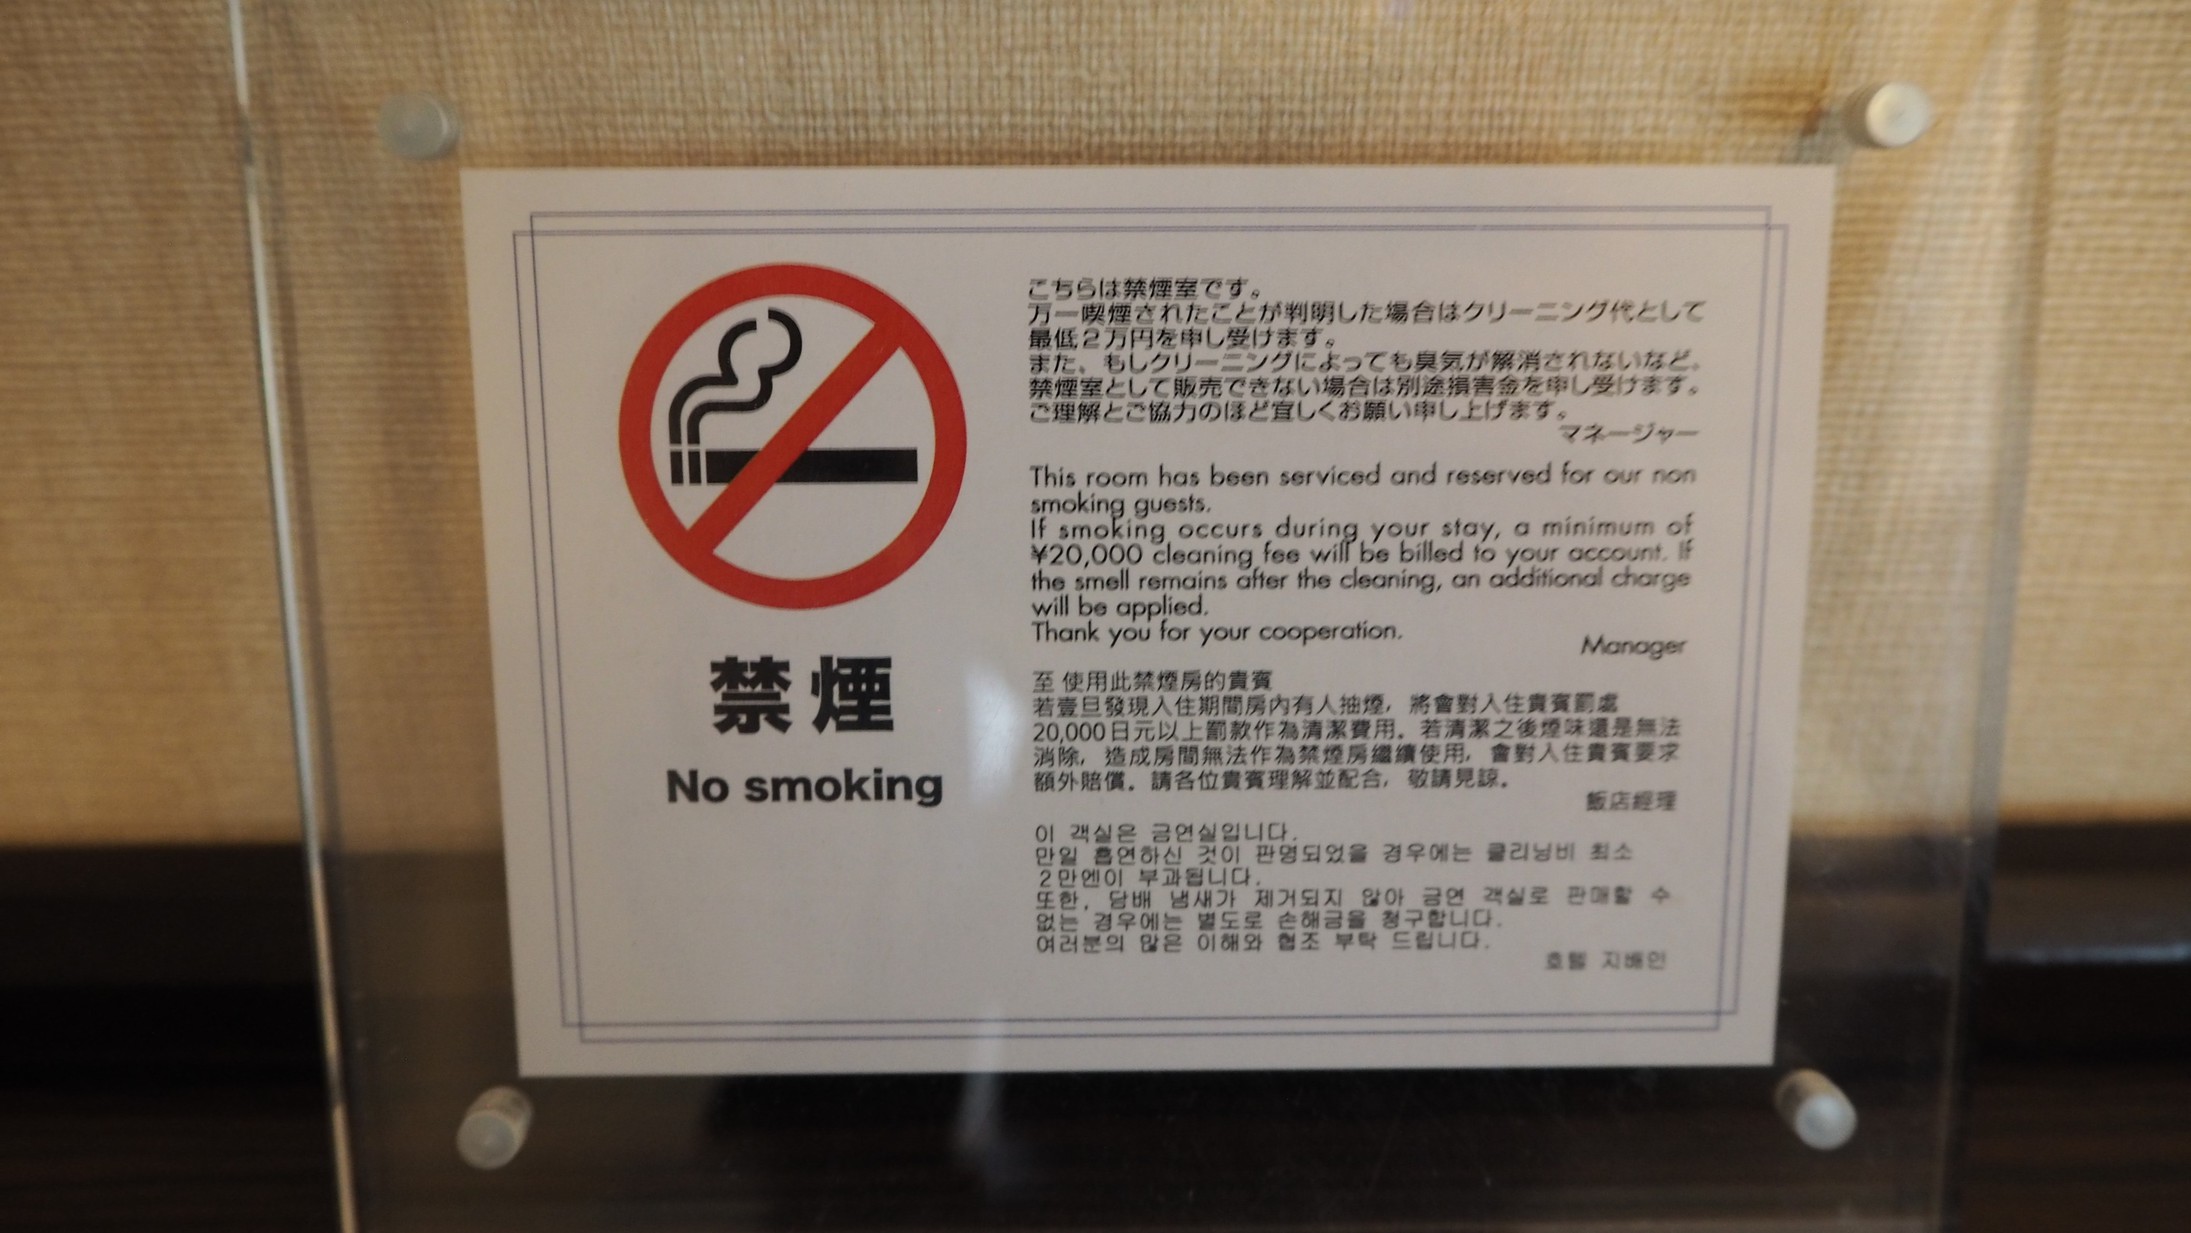 当館は全館禁煙でございます